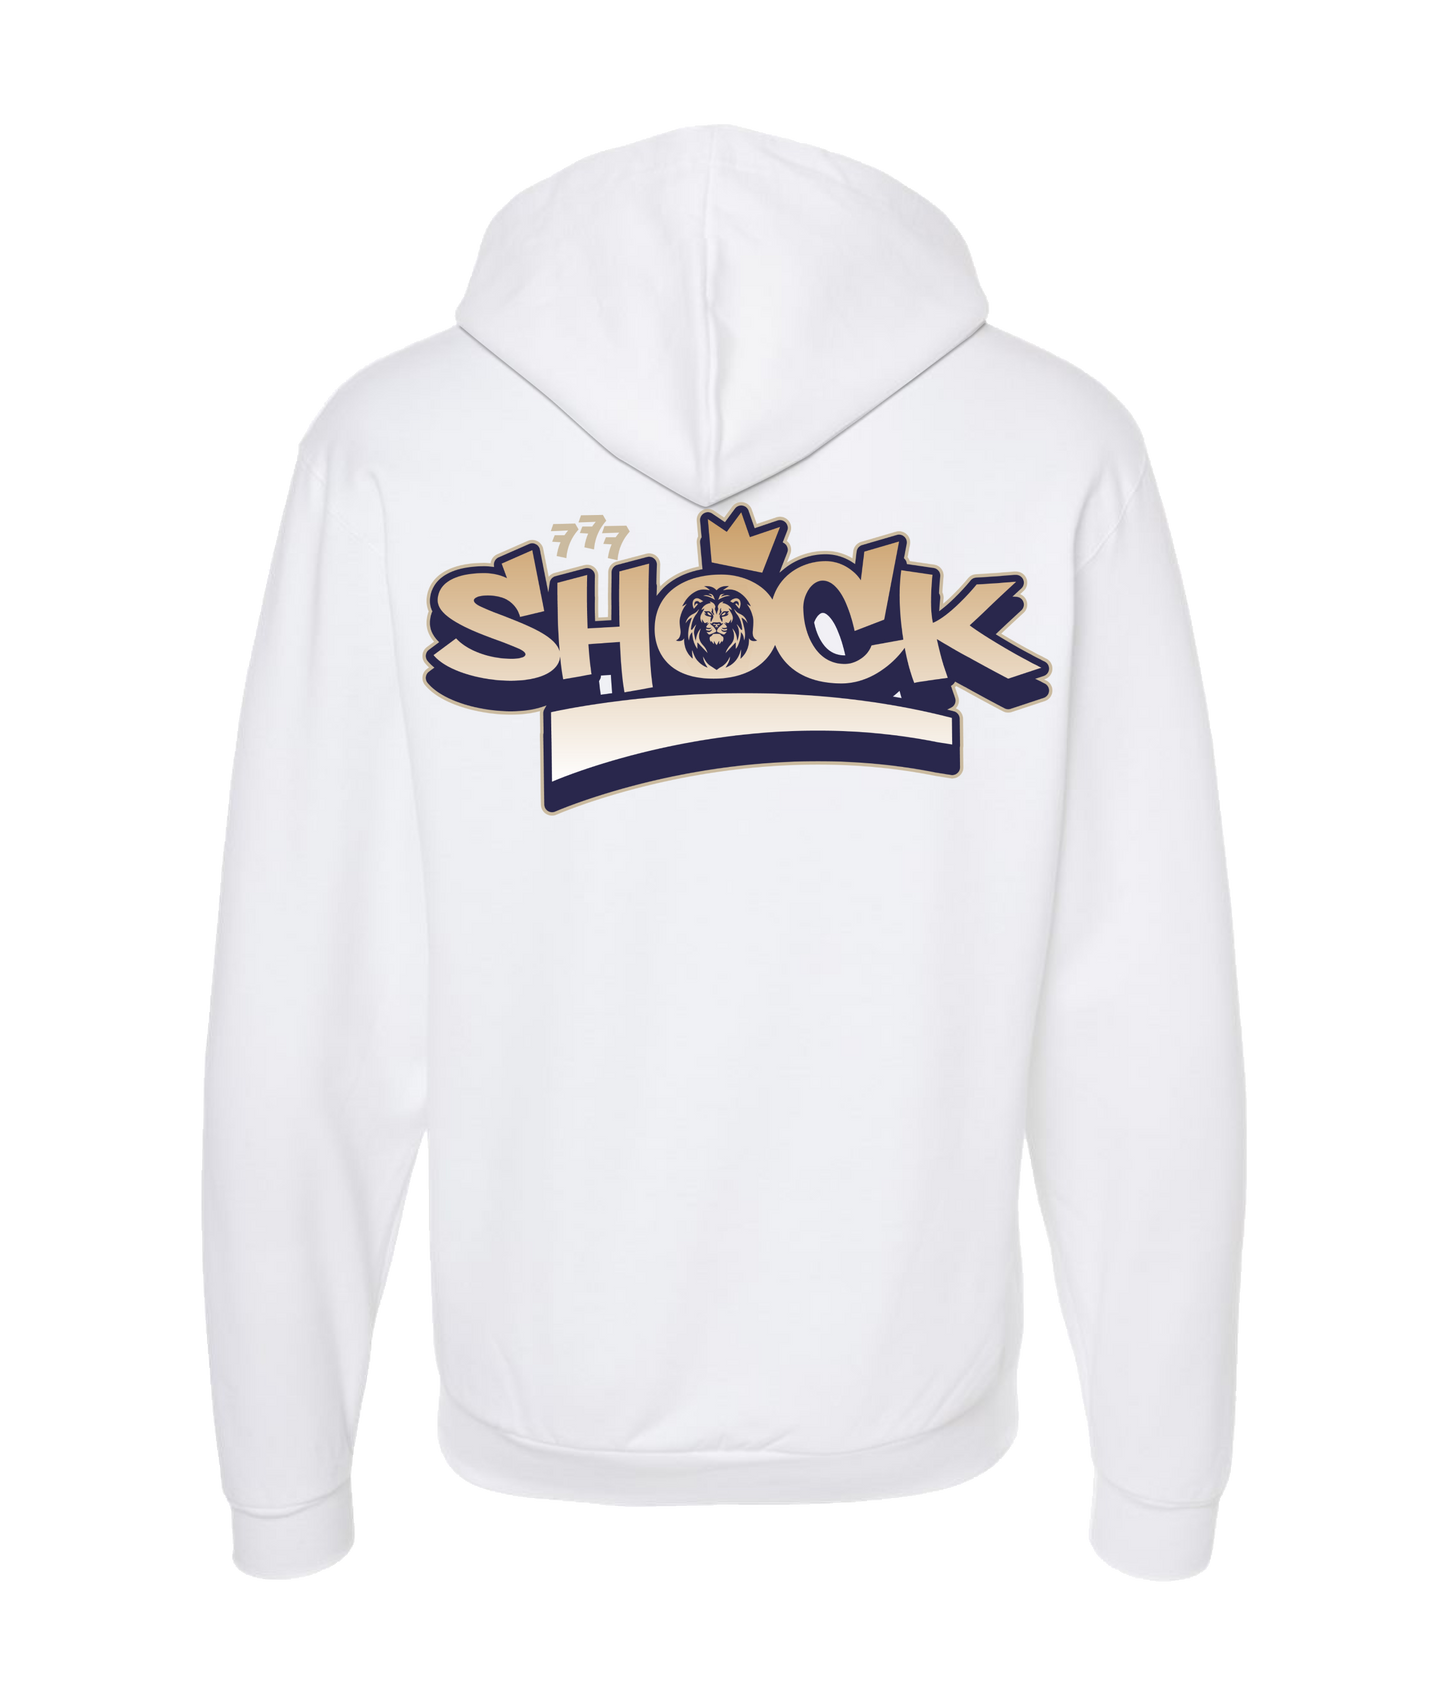 Shock - SHOCK - White Zip Up Hoodie